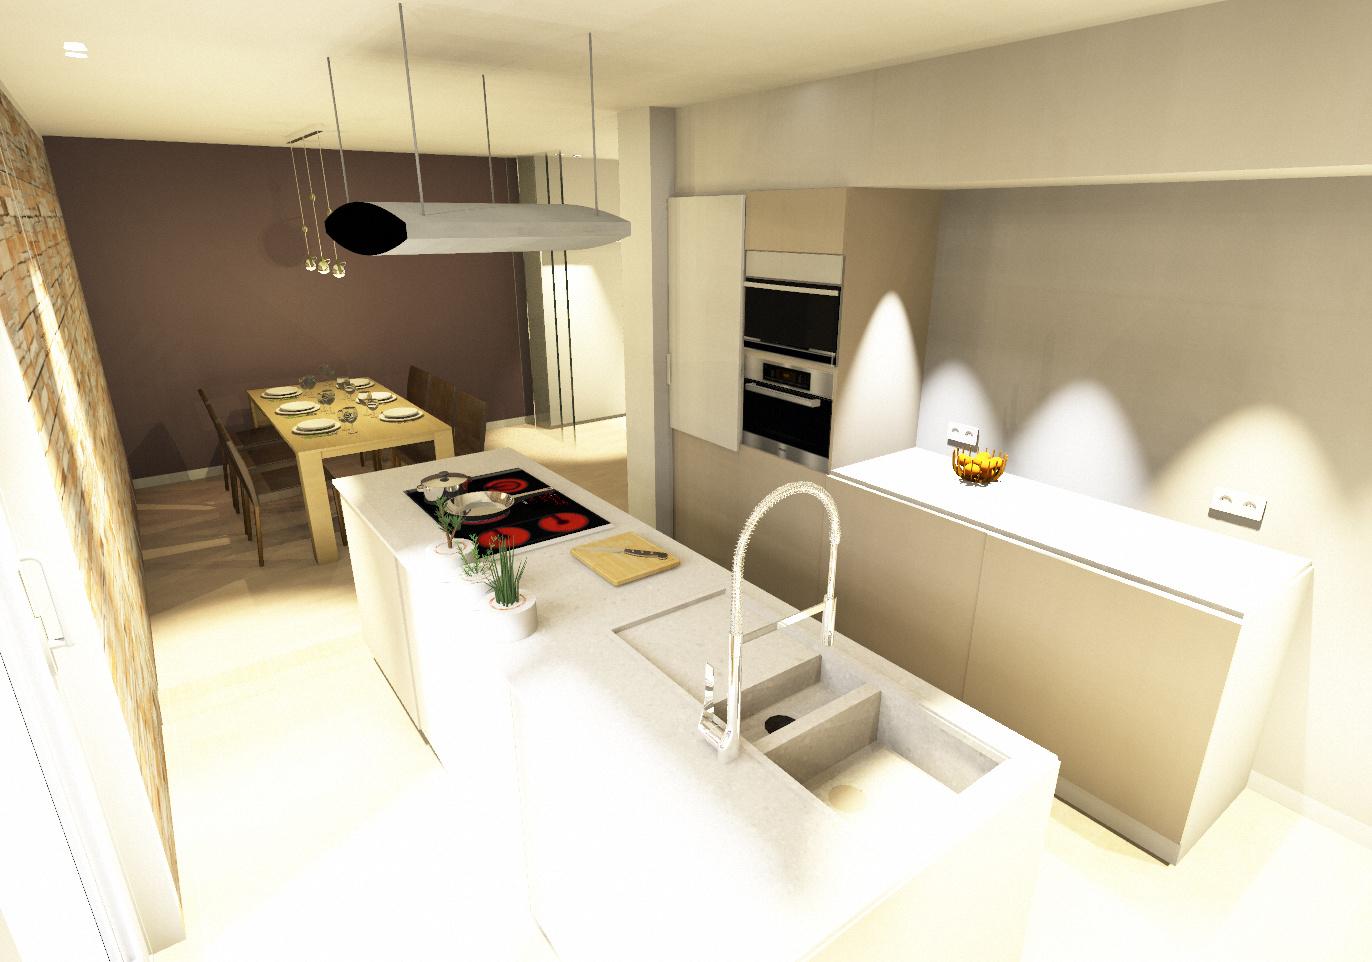 Entwurf Küche Essen 3 #einrichtungsberatung #innenarchitektur ©Flohs Wohnraumkonzepte